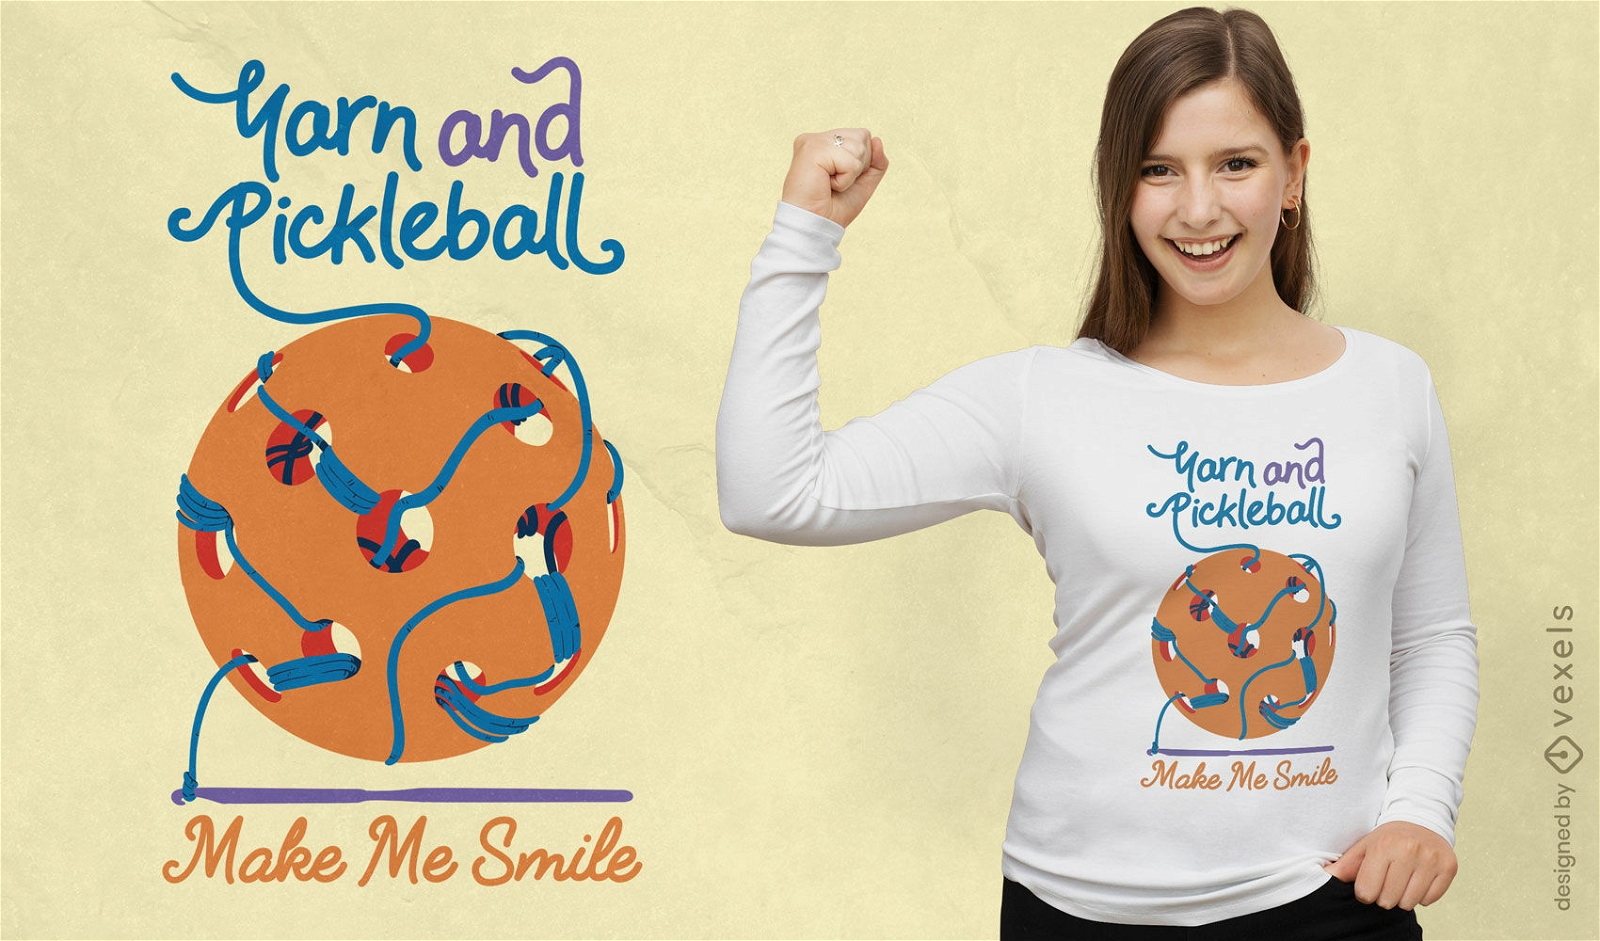 Pickleball and knitting t-shirt design